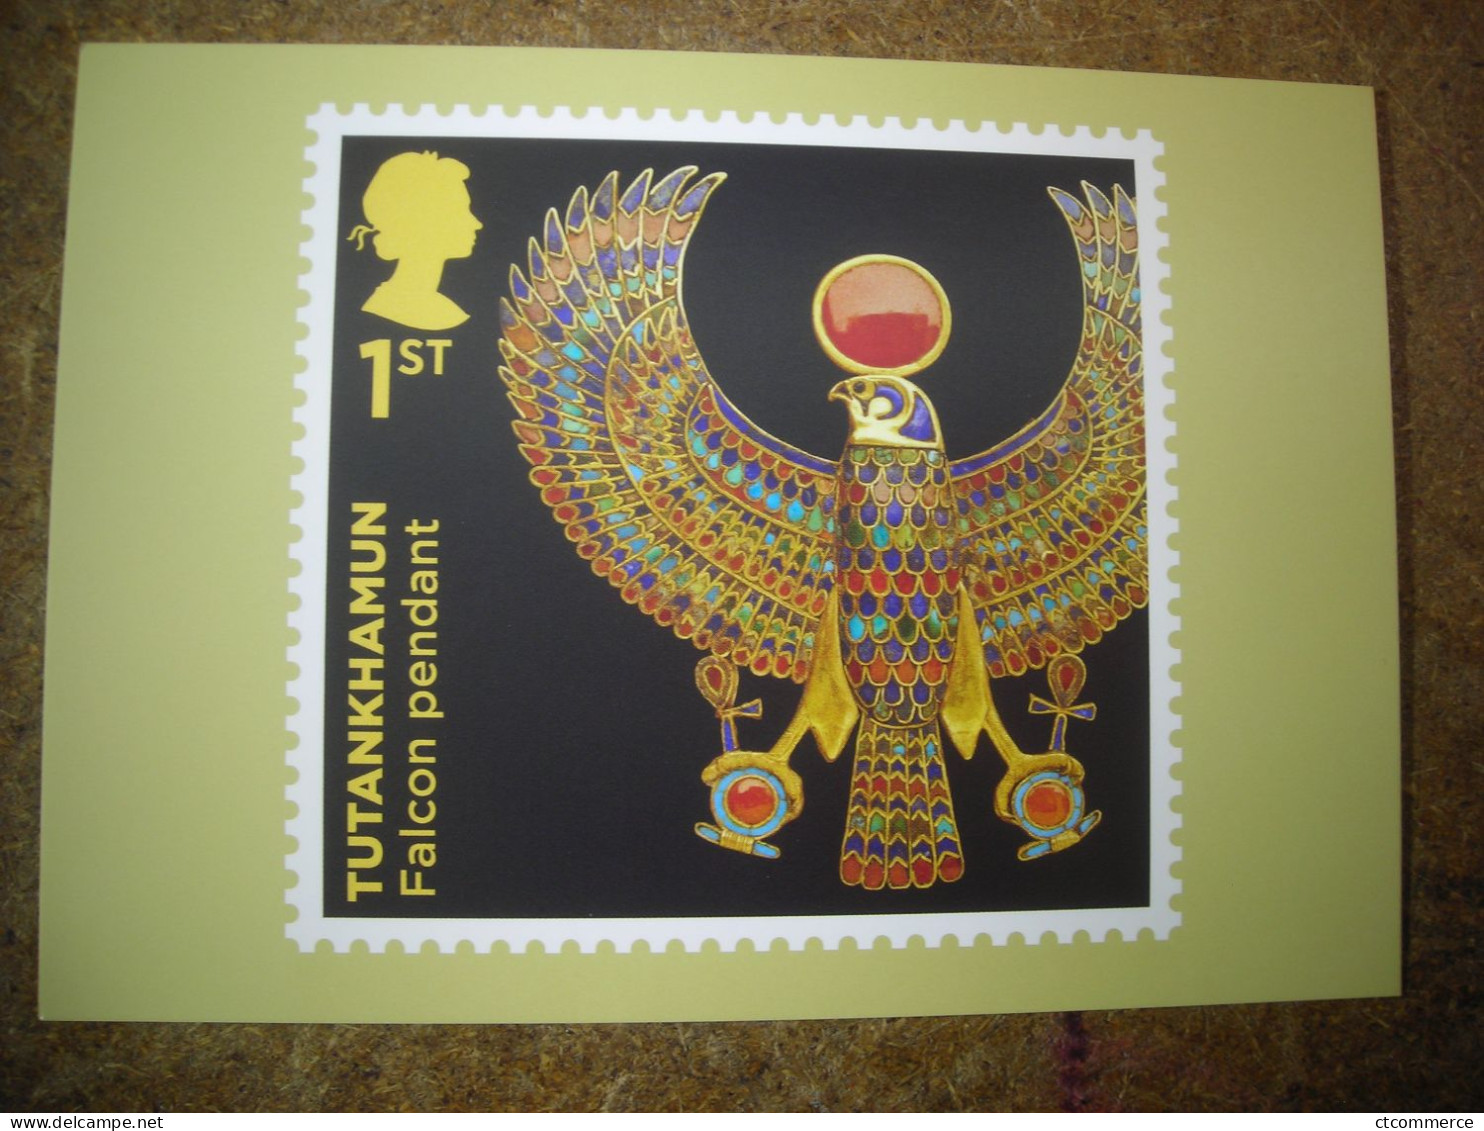 13 cartes postales PHQ Tutankhamun, Toutankhamon